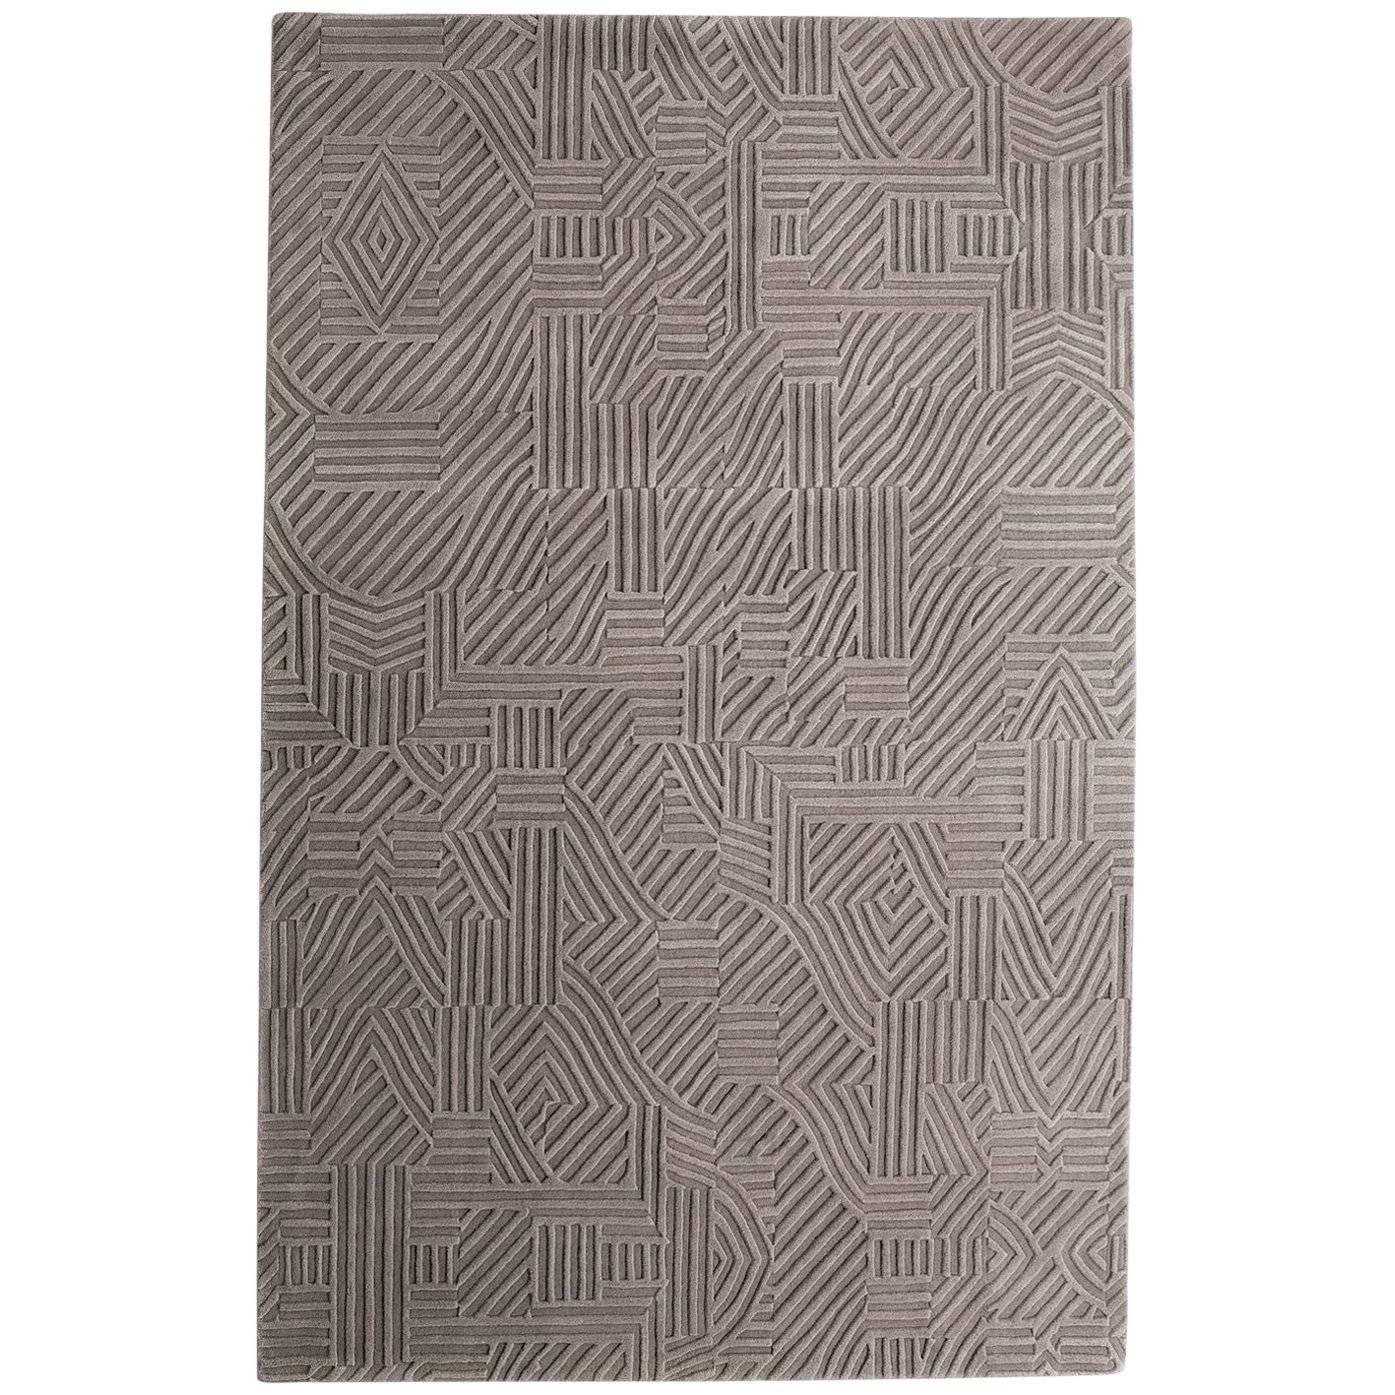 African Pattern 1 Teppich aus handgetufteter Wolle von Milton Glaser, klein